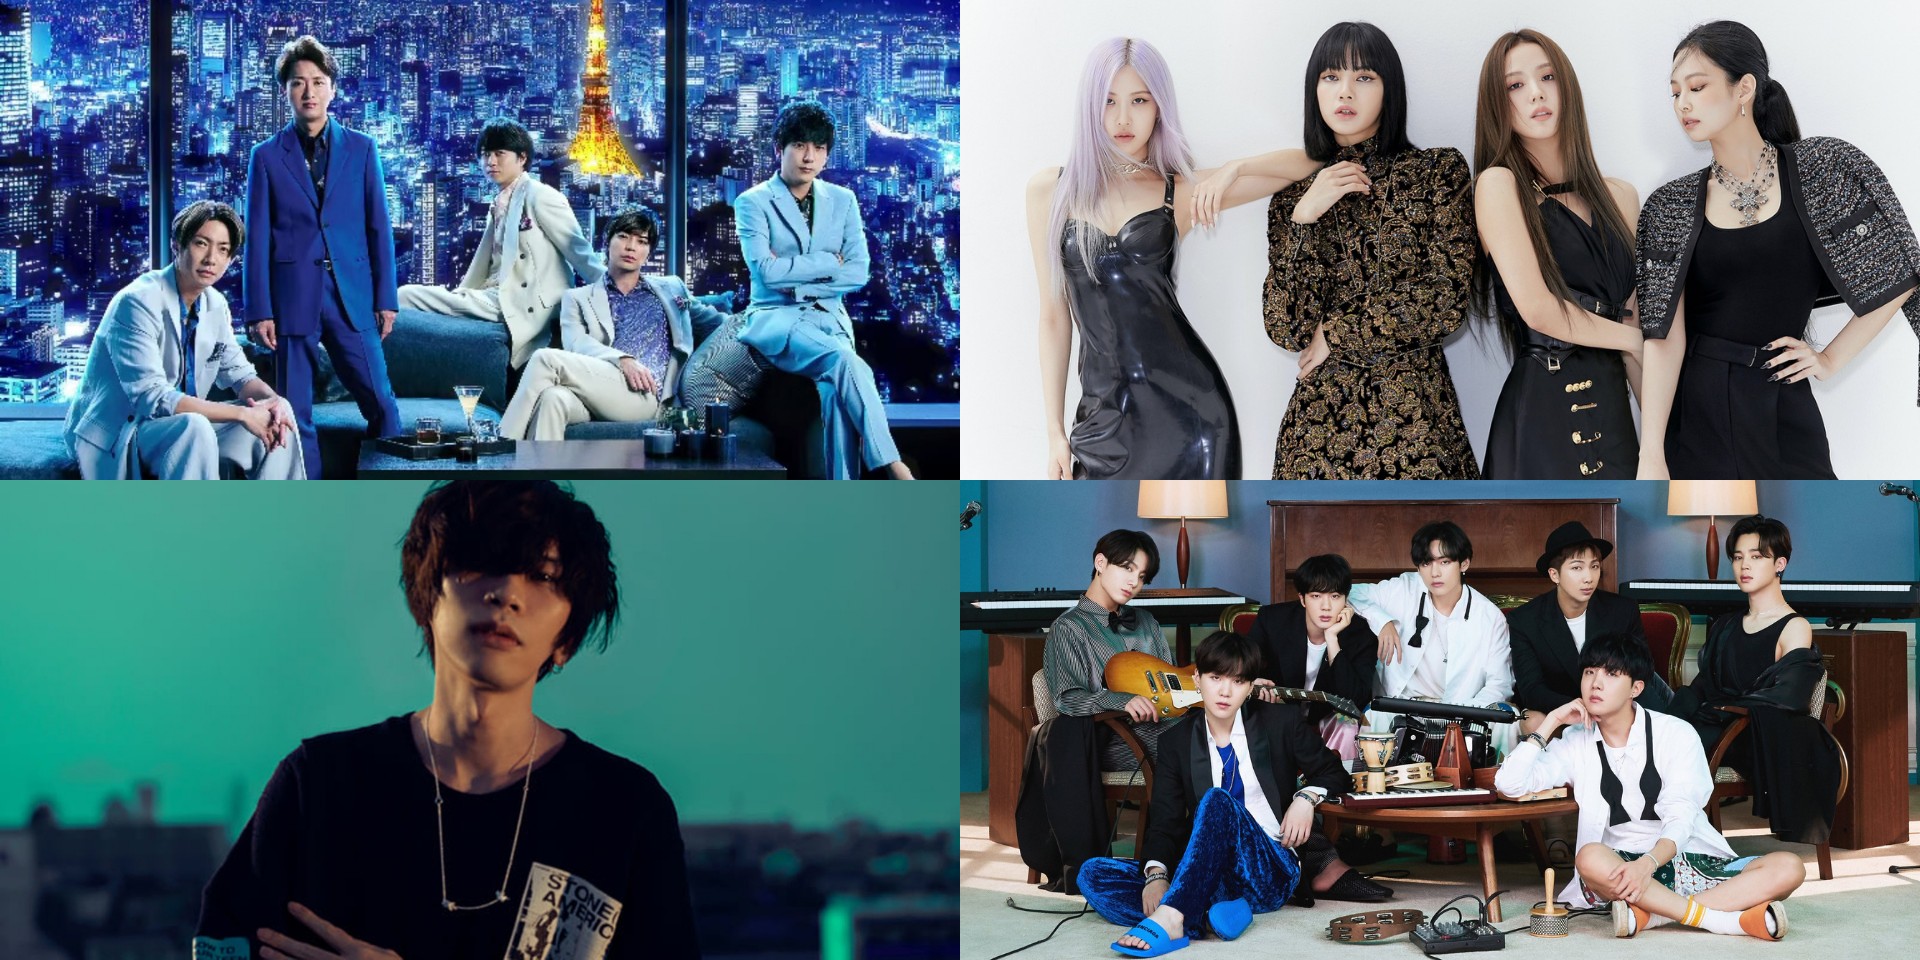 K-pop and J-pop acts top 2020 global album sales – BTS, Kenshi Yonezu, BLACKPINK, ARASHI, and more